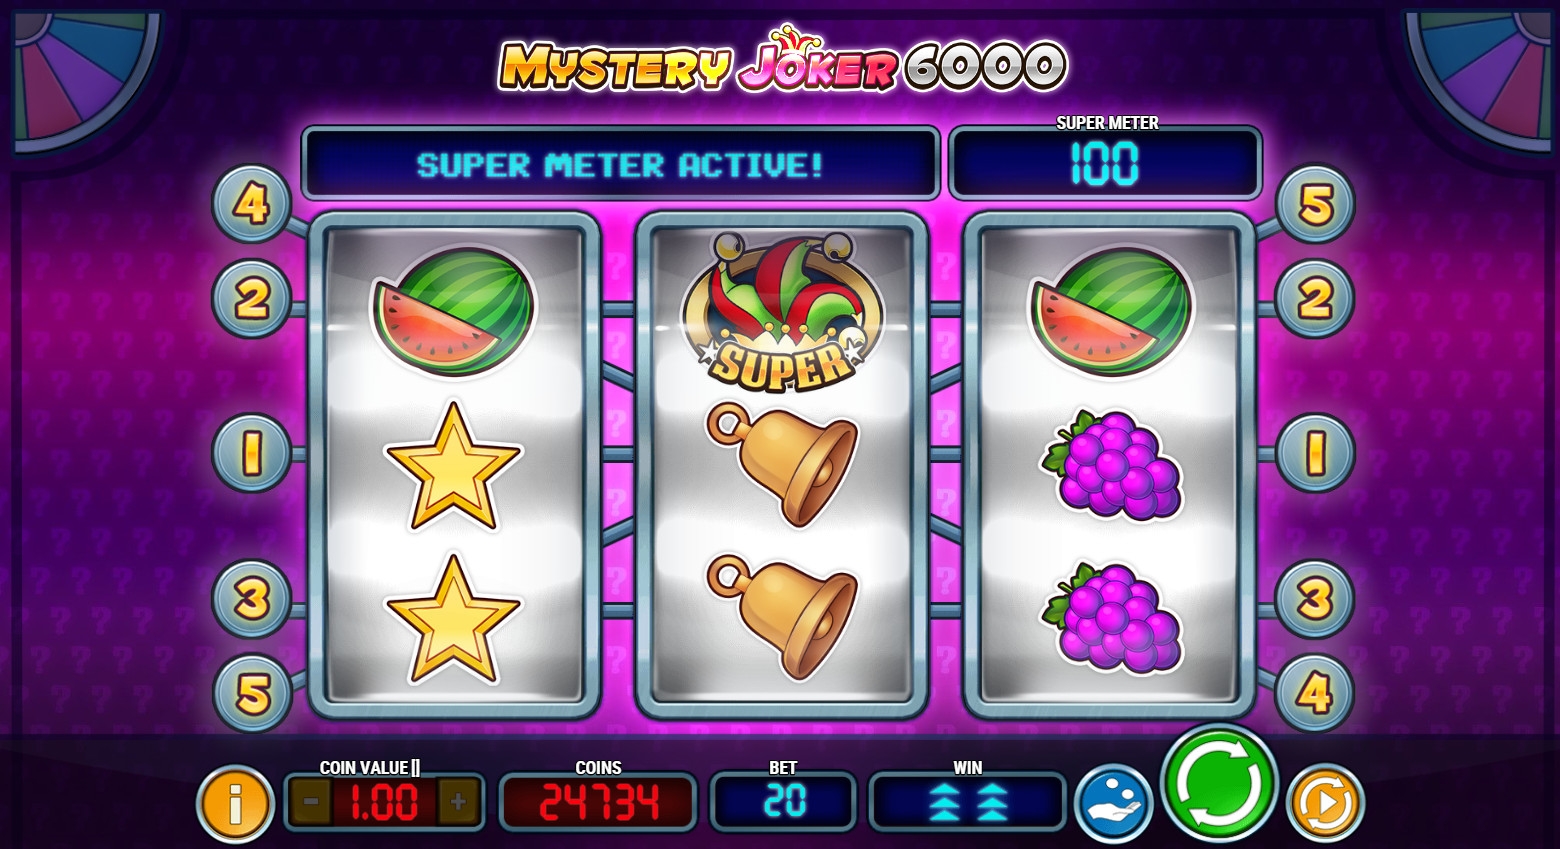 Mystery Joker 6000 (Mystery Joker 6000) from category Slots